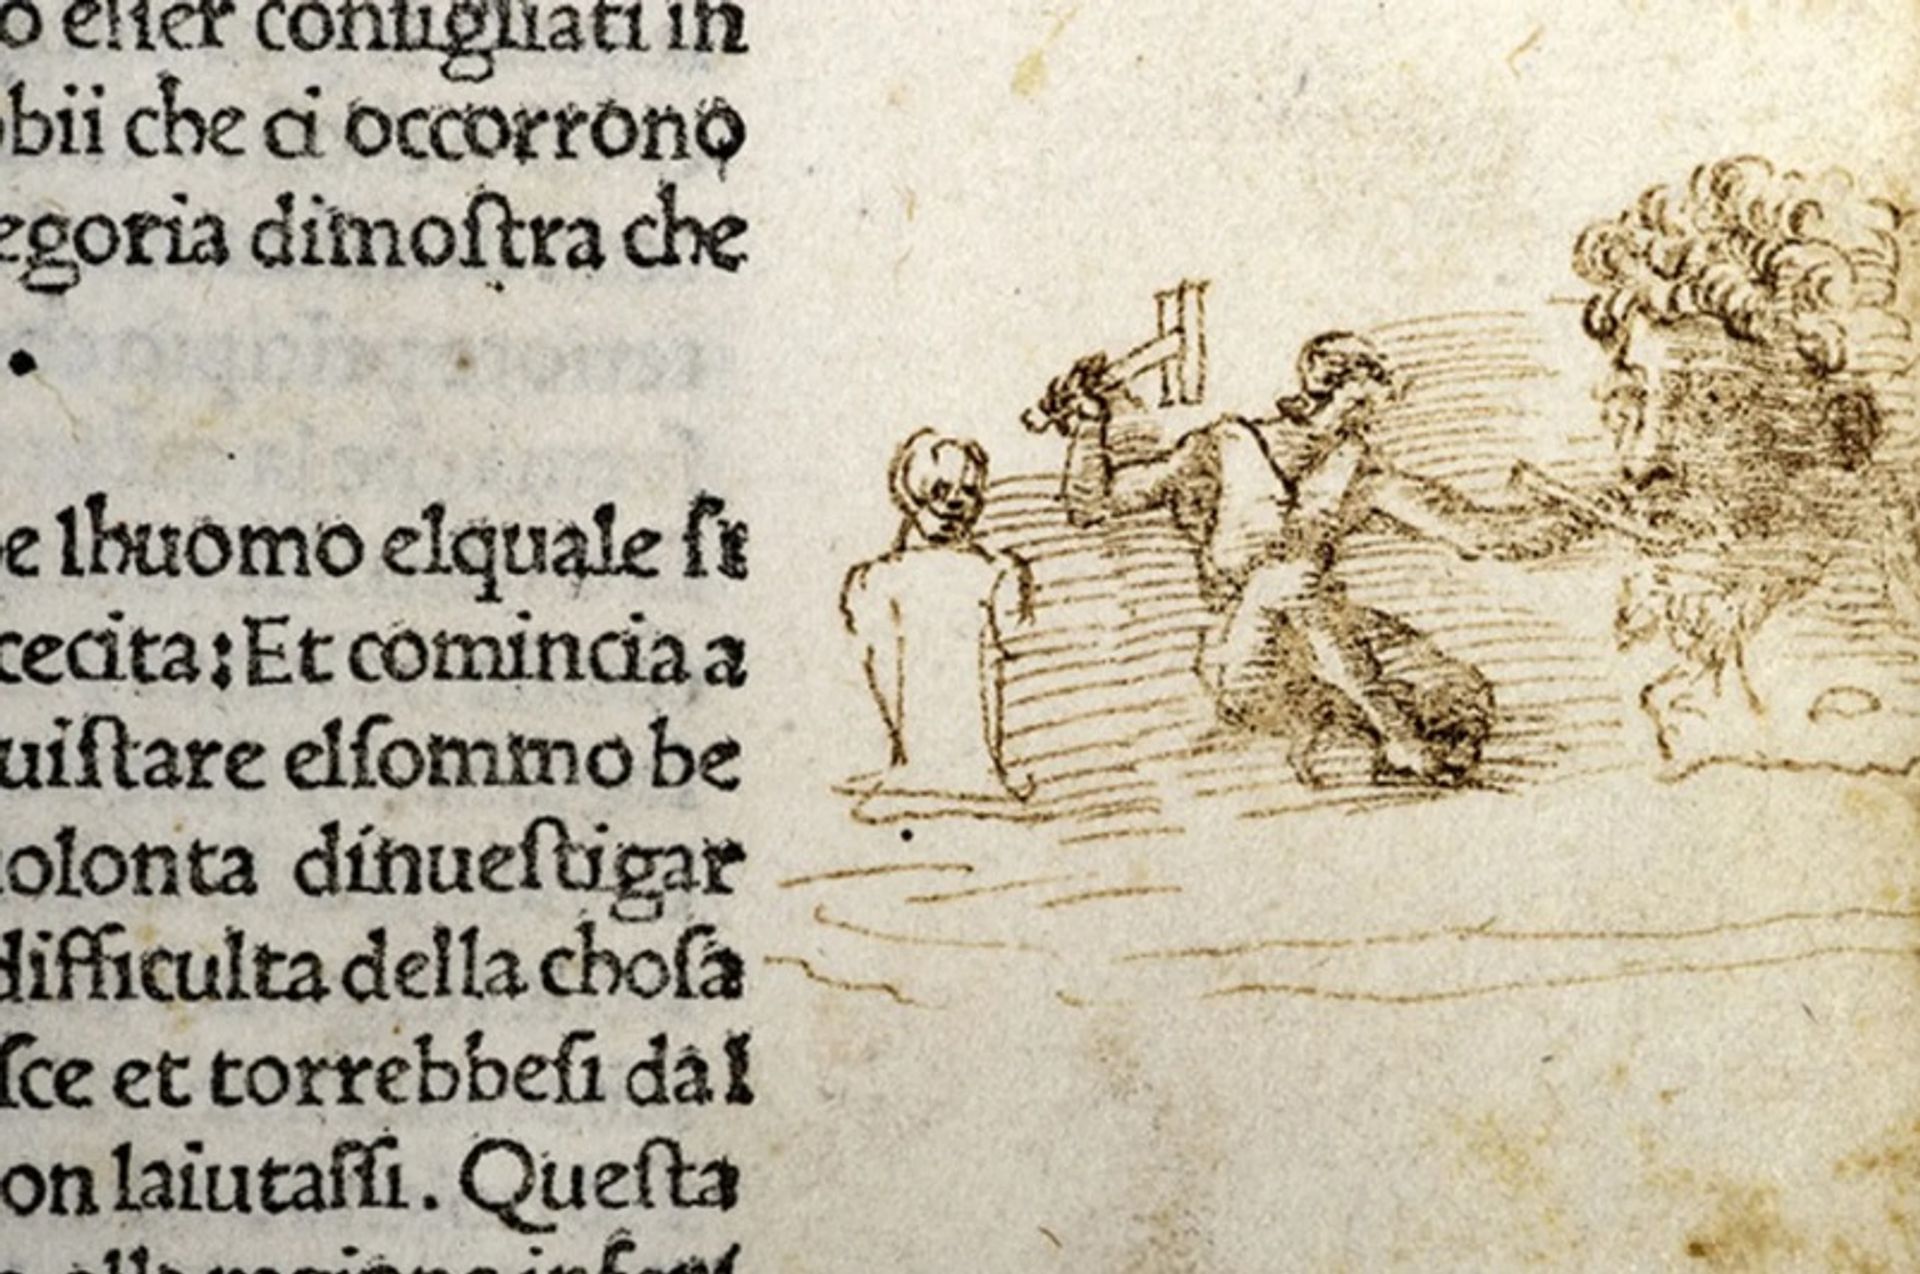 הרישום נמצא בעותק של 'התופת' של דנטה

Biblioteca Vallicelliana Roma